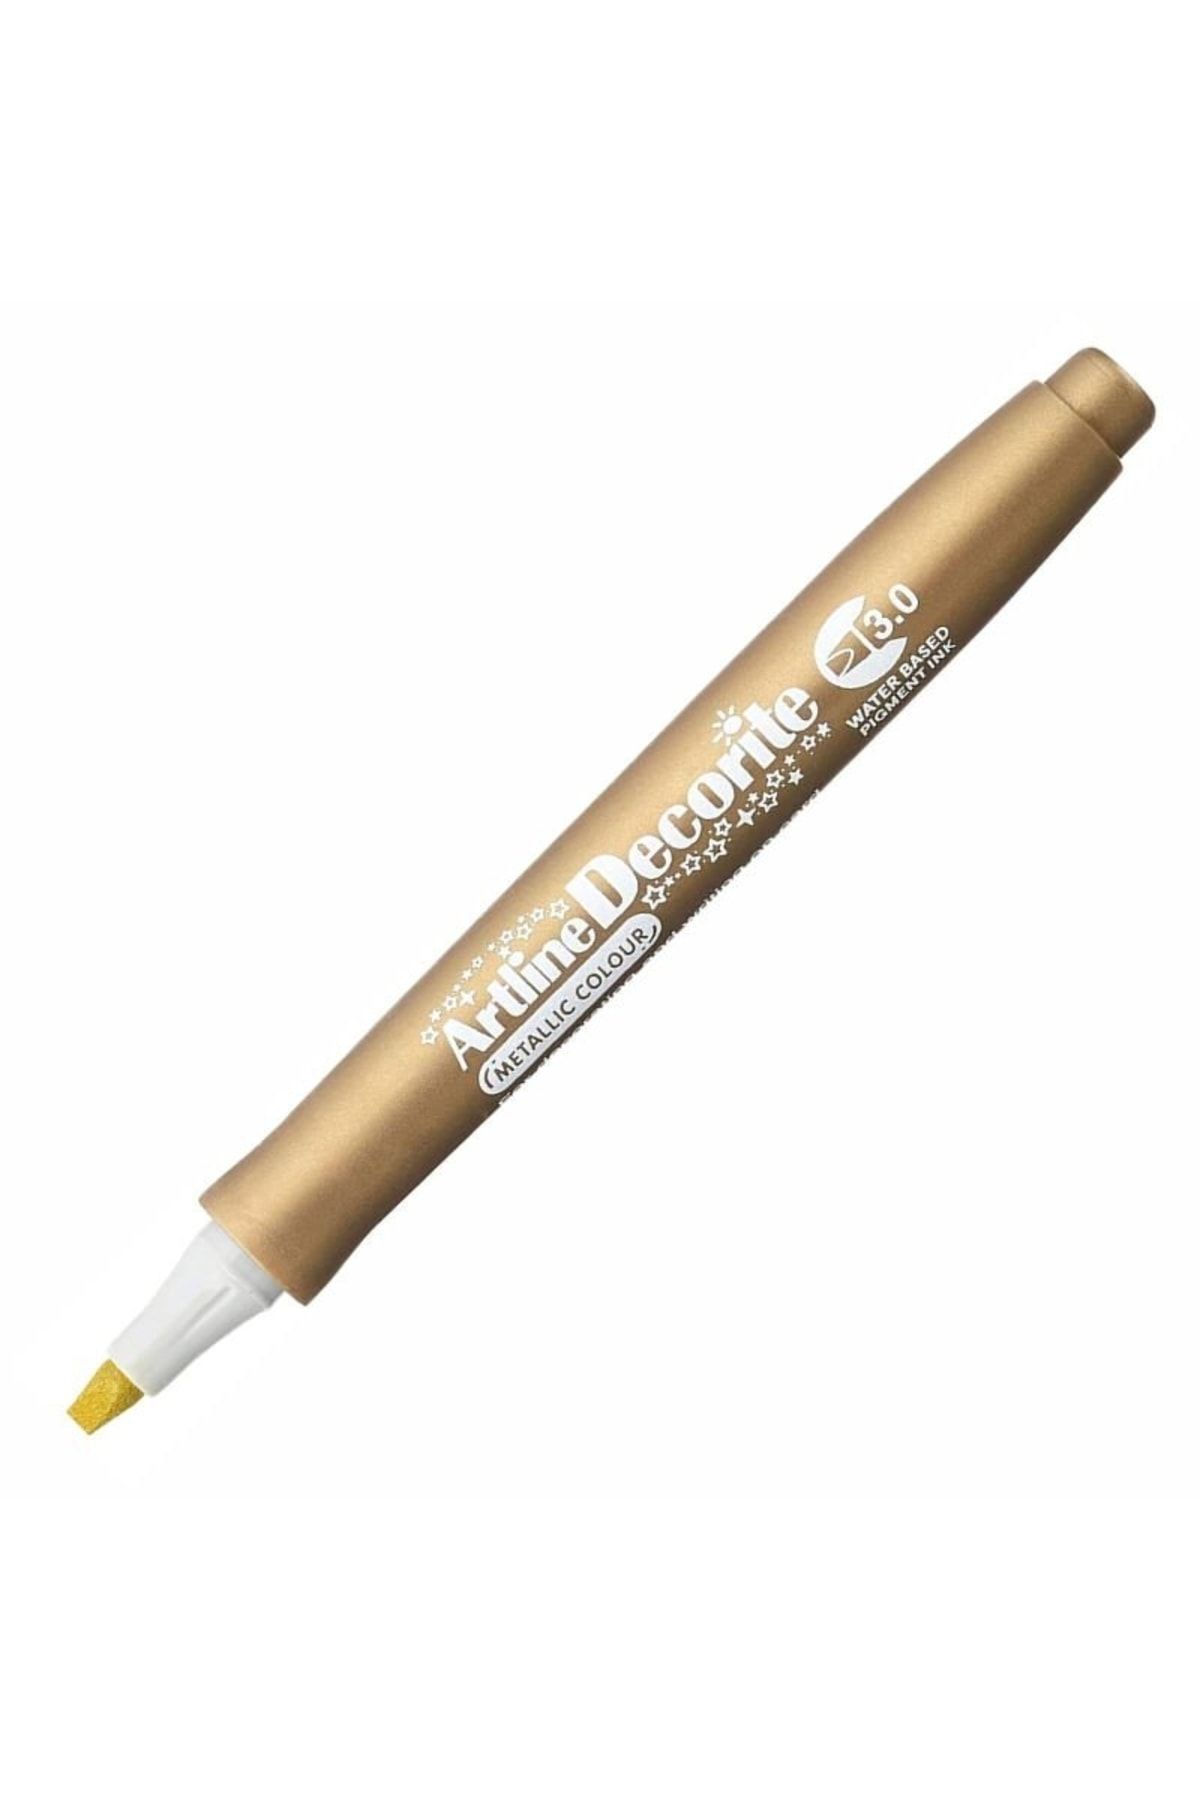 Genel Markalar Artline Decorite Marker Kalem Düz Kesik Uç 3.0 Gold